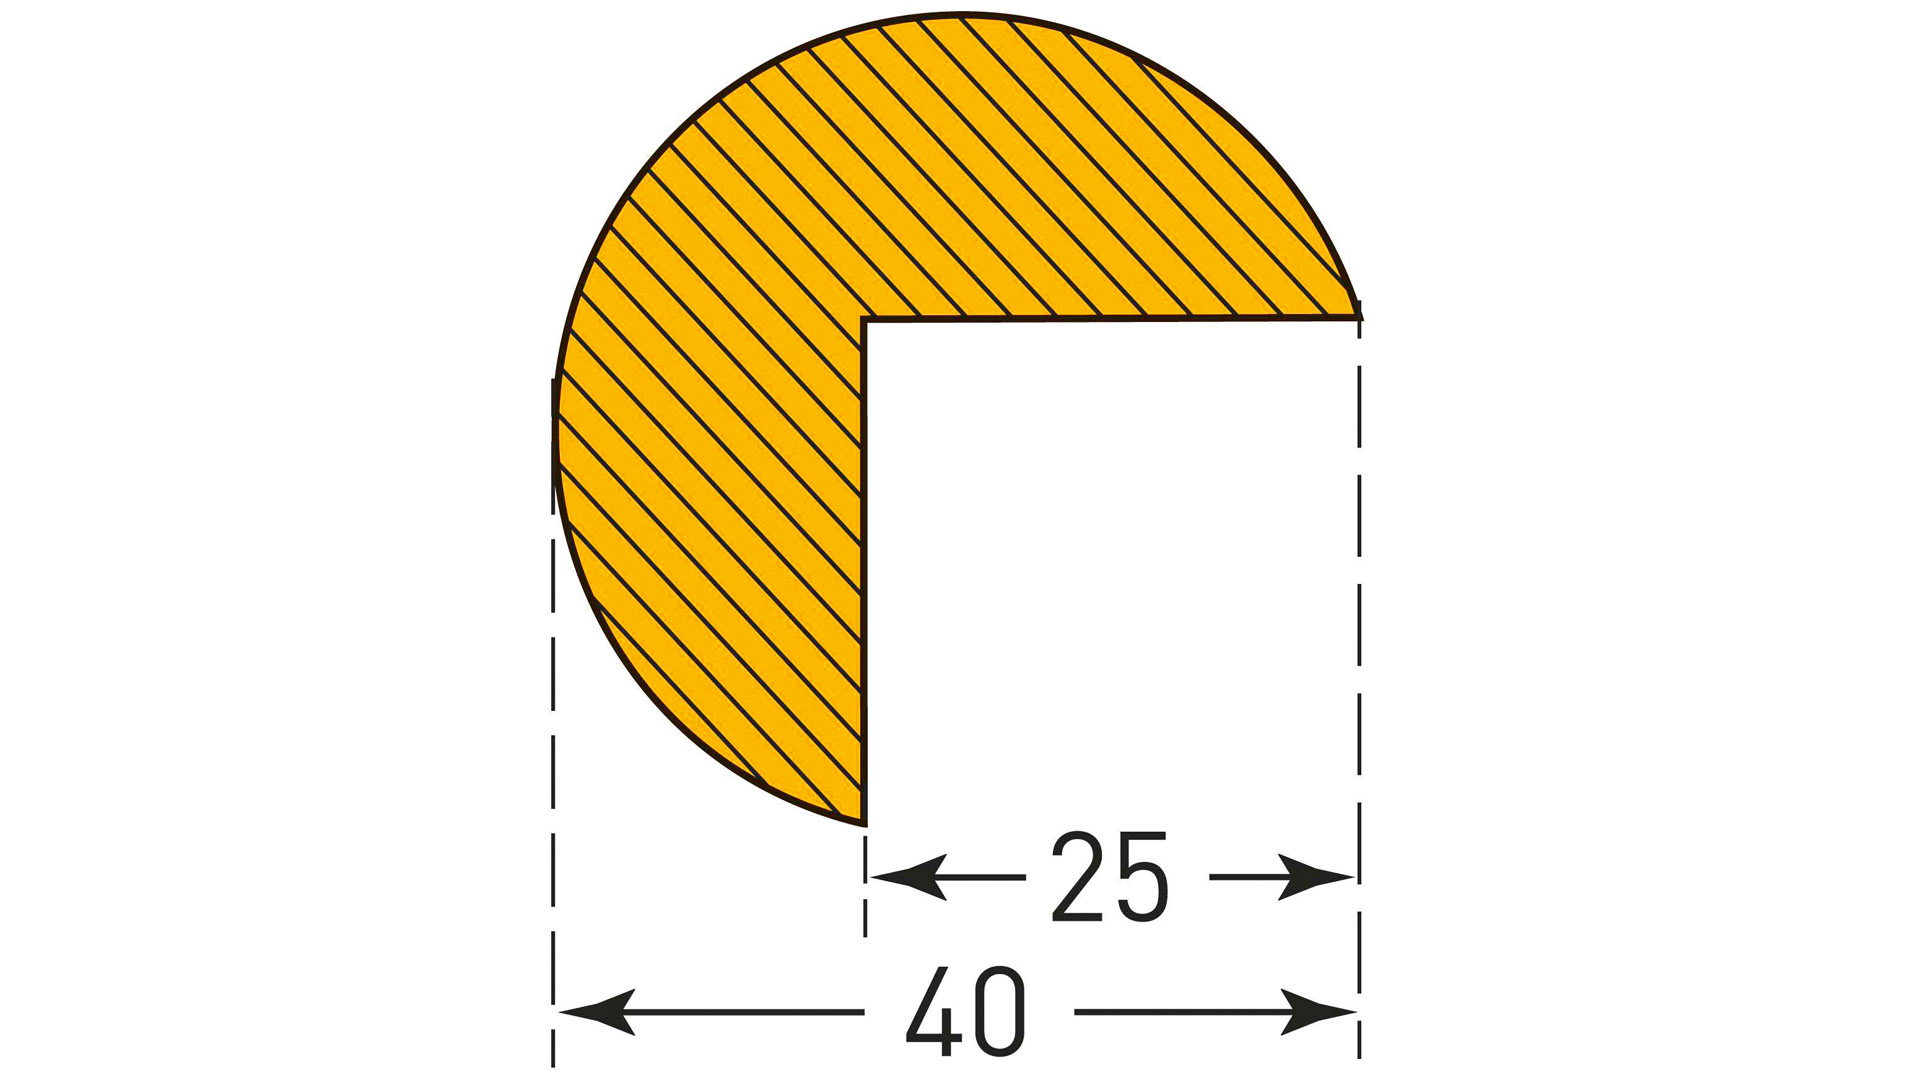 Warn- und Schutzprofil, Kantenschutz, Kreis, 40x25 mm, gelb/schwarz, selbstklebend, Länge 1000 mm